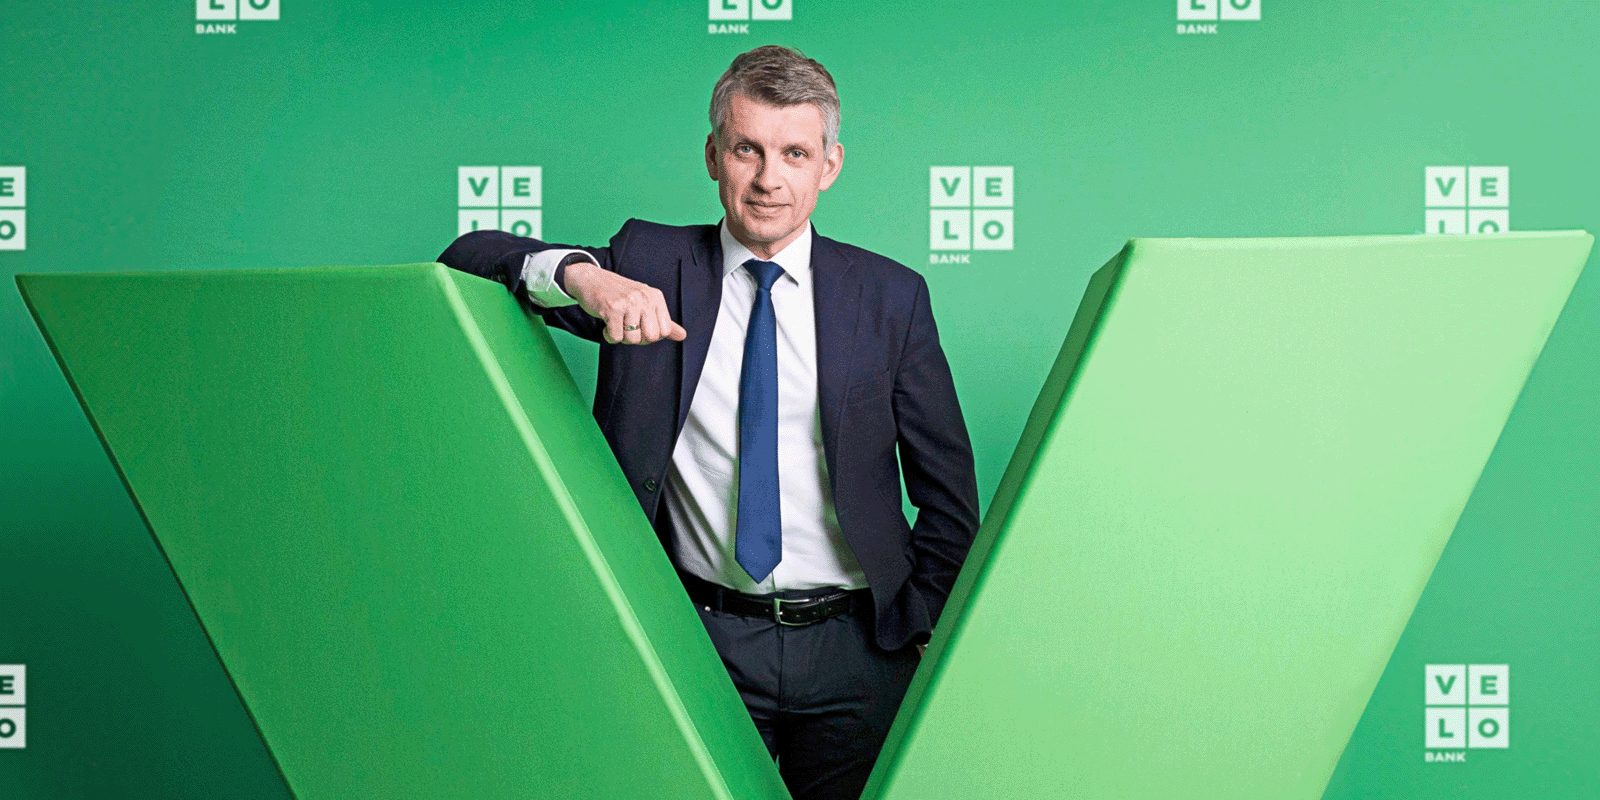 VeloBank z nowym inwestorem Banki MEDIARUN.COM VELOBANK INWESTYCJA V1